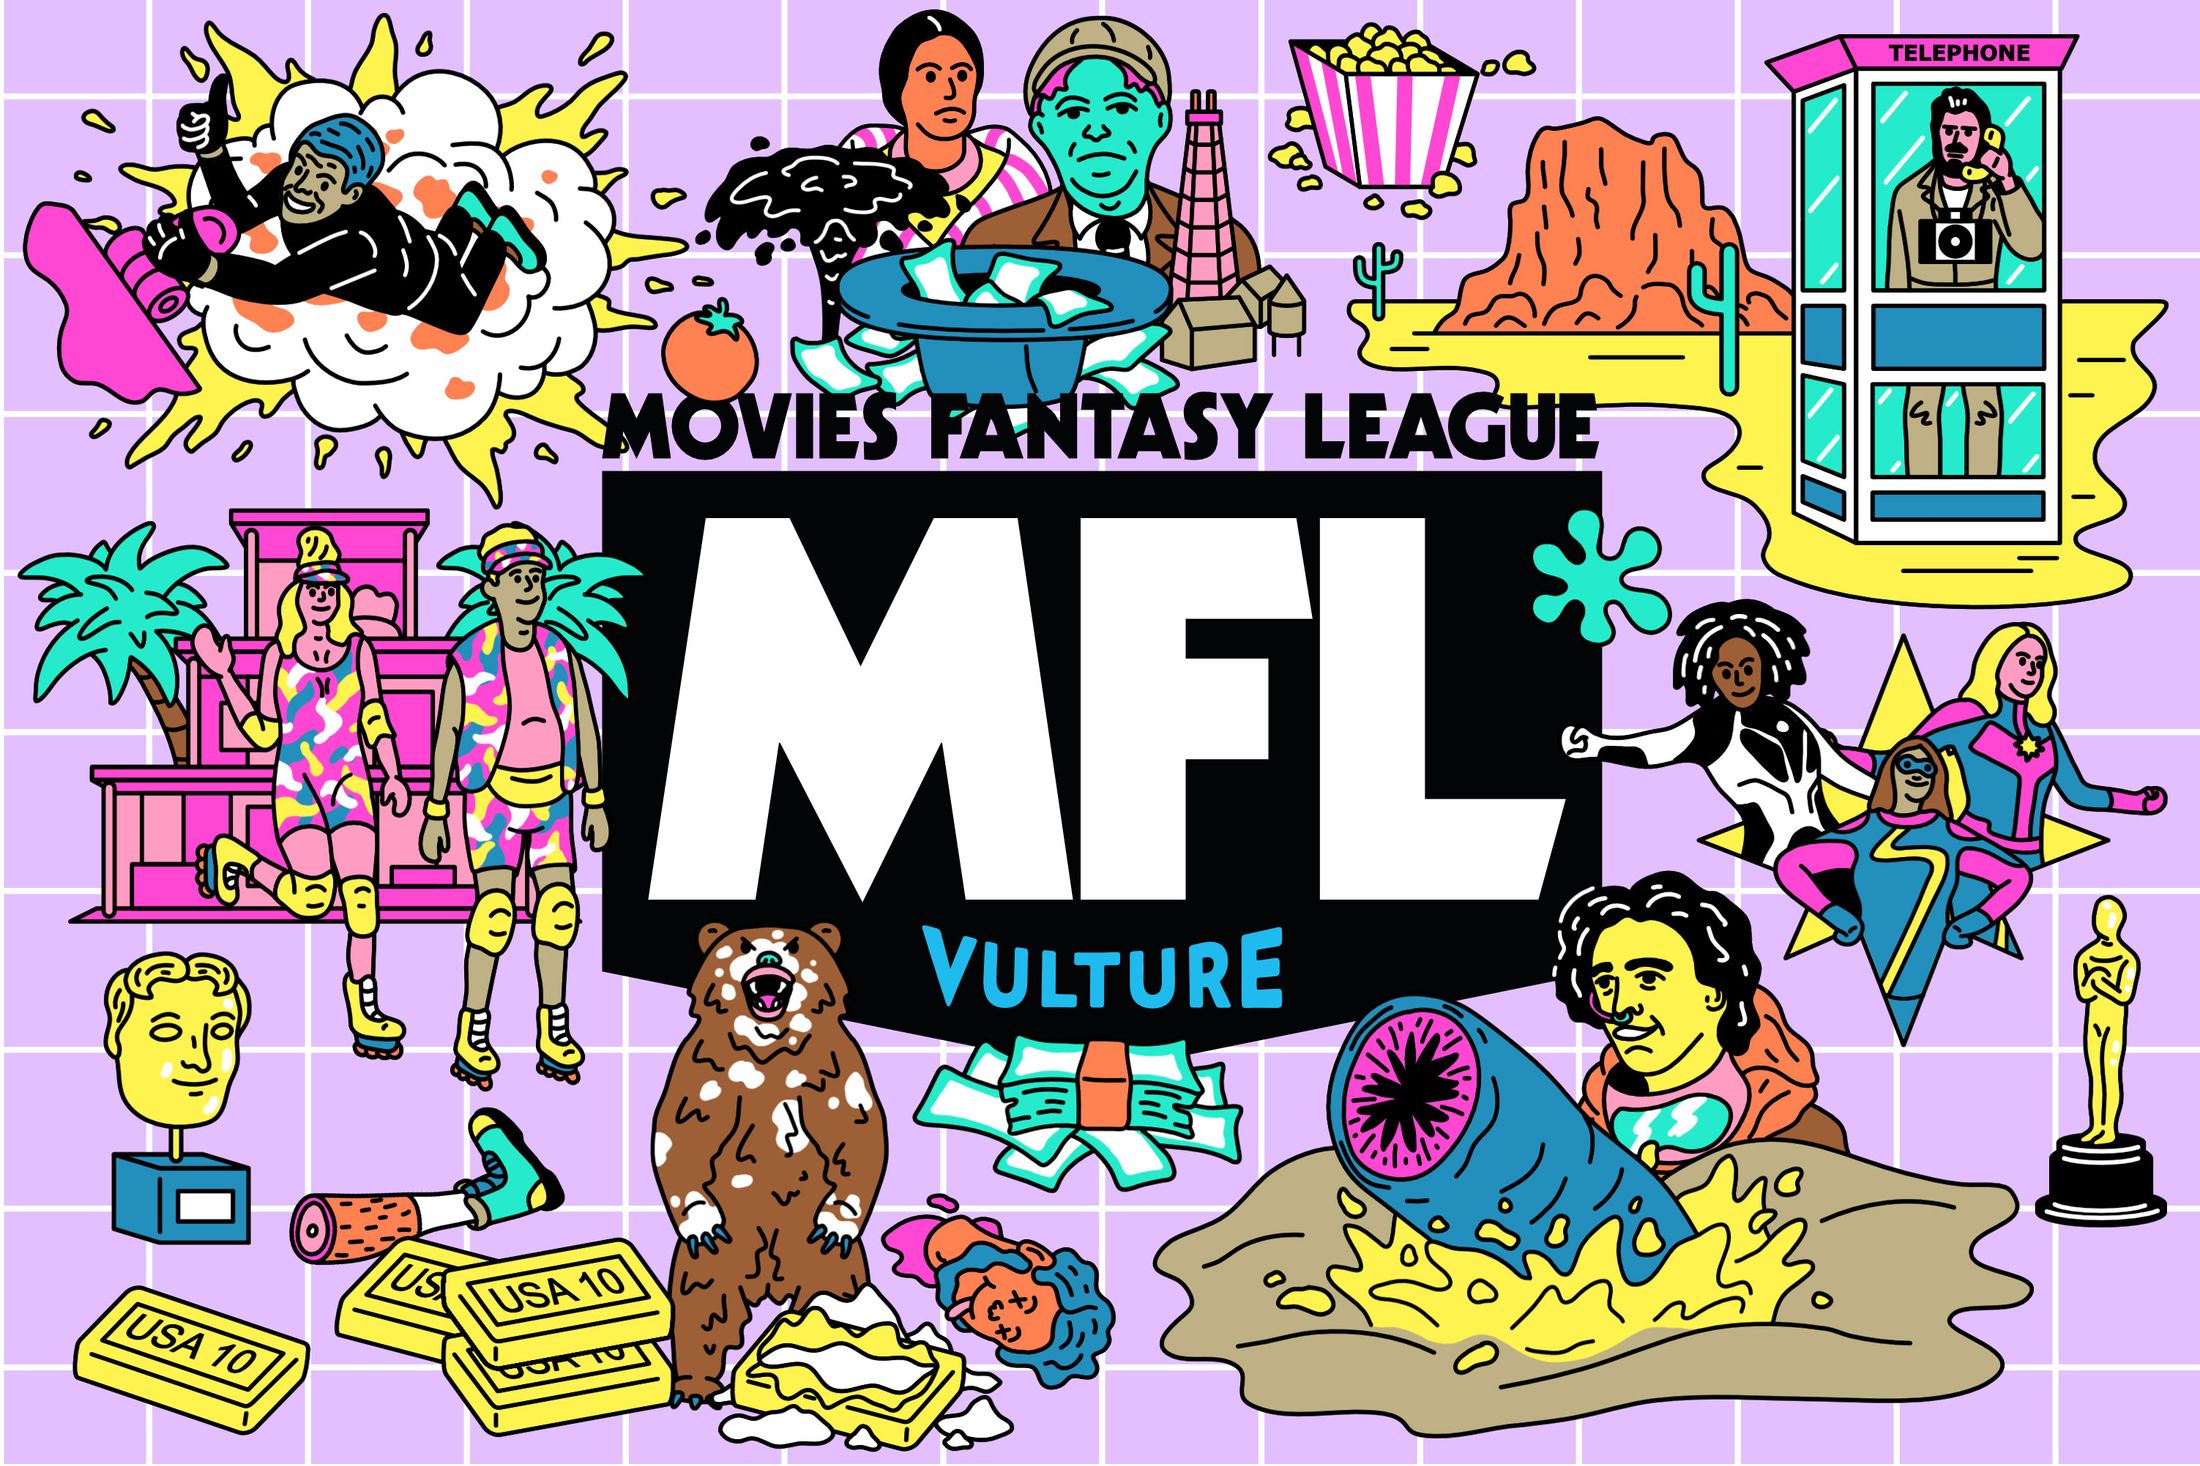 Vulture Fall Fantasy Movie League